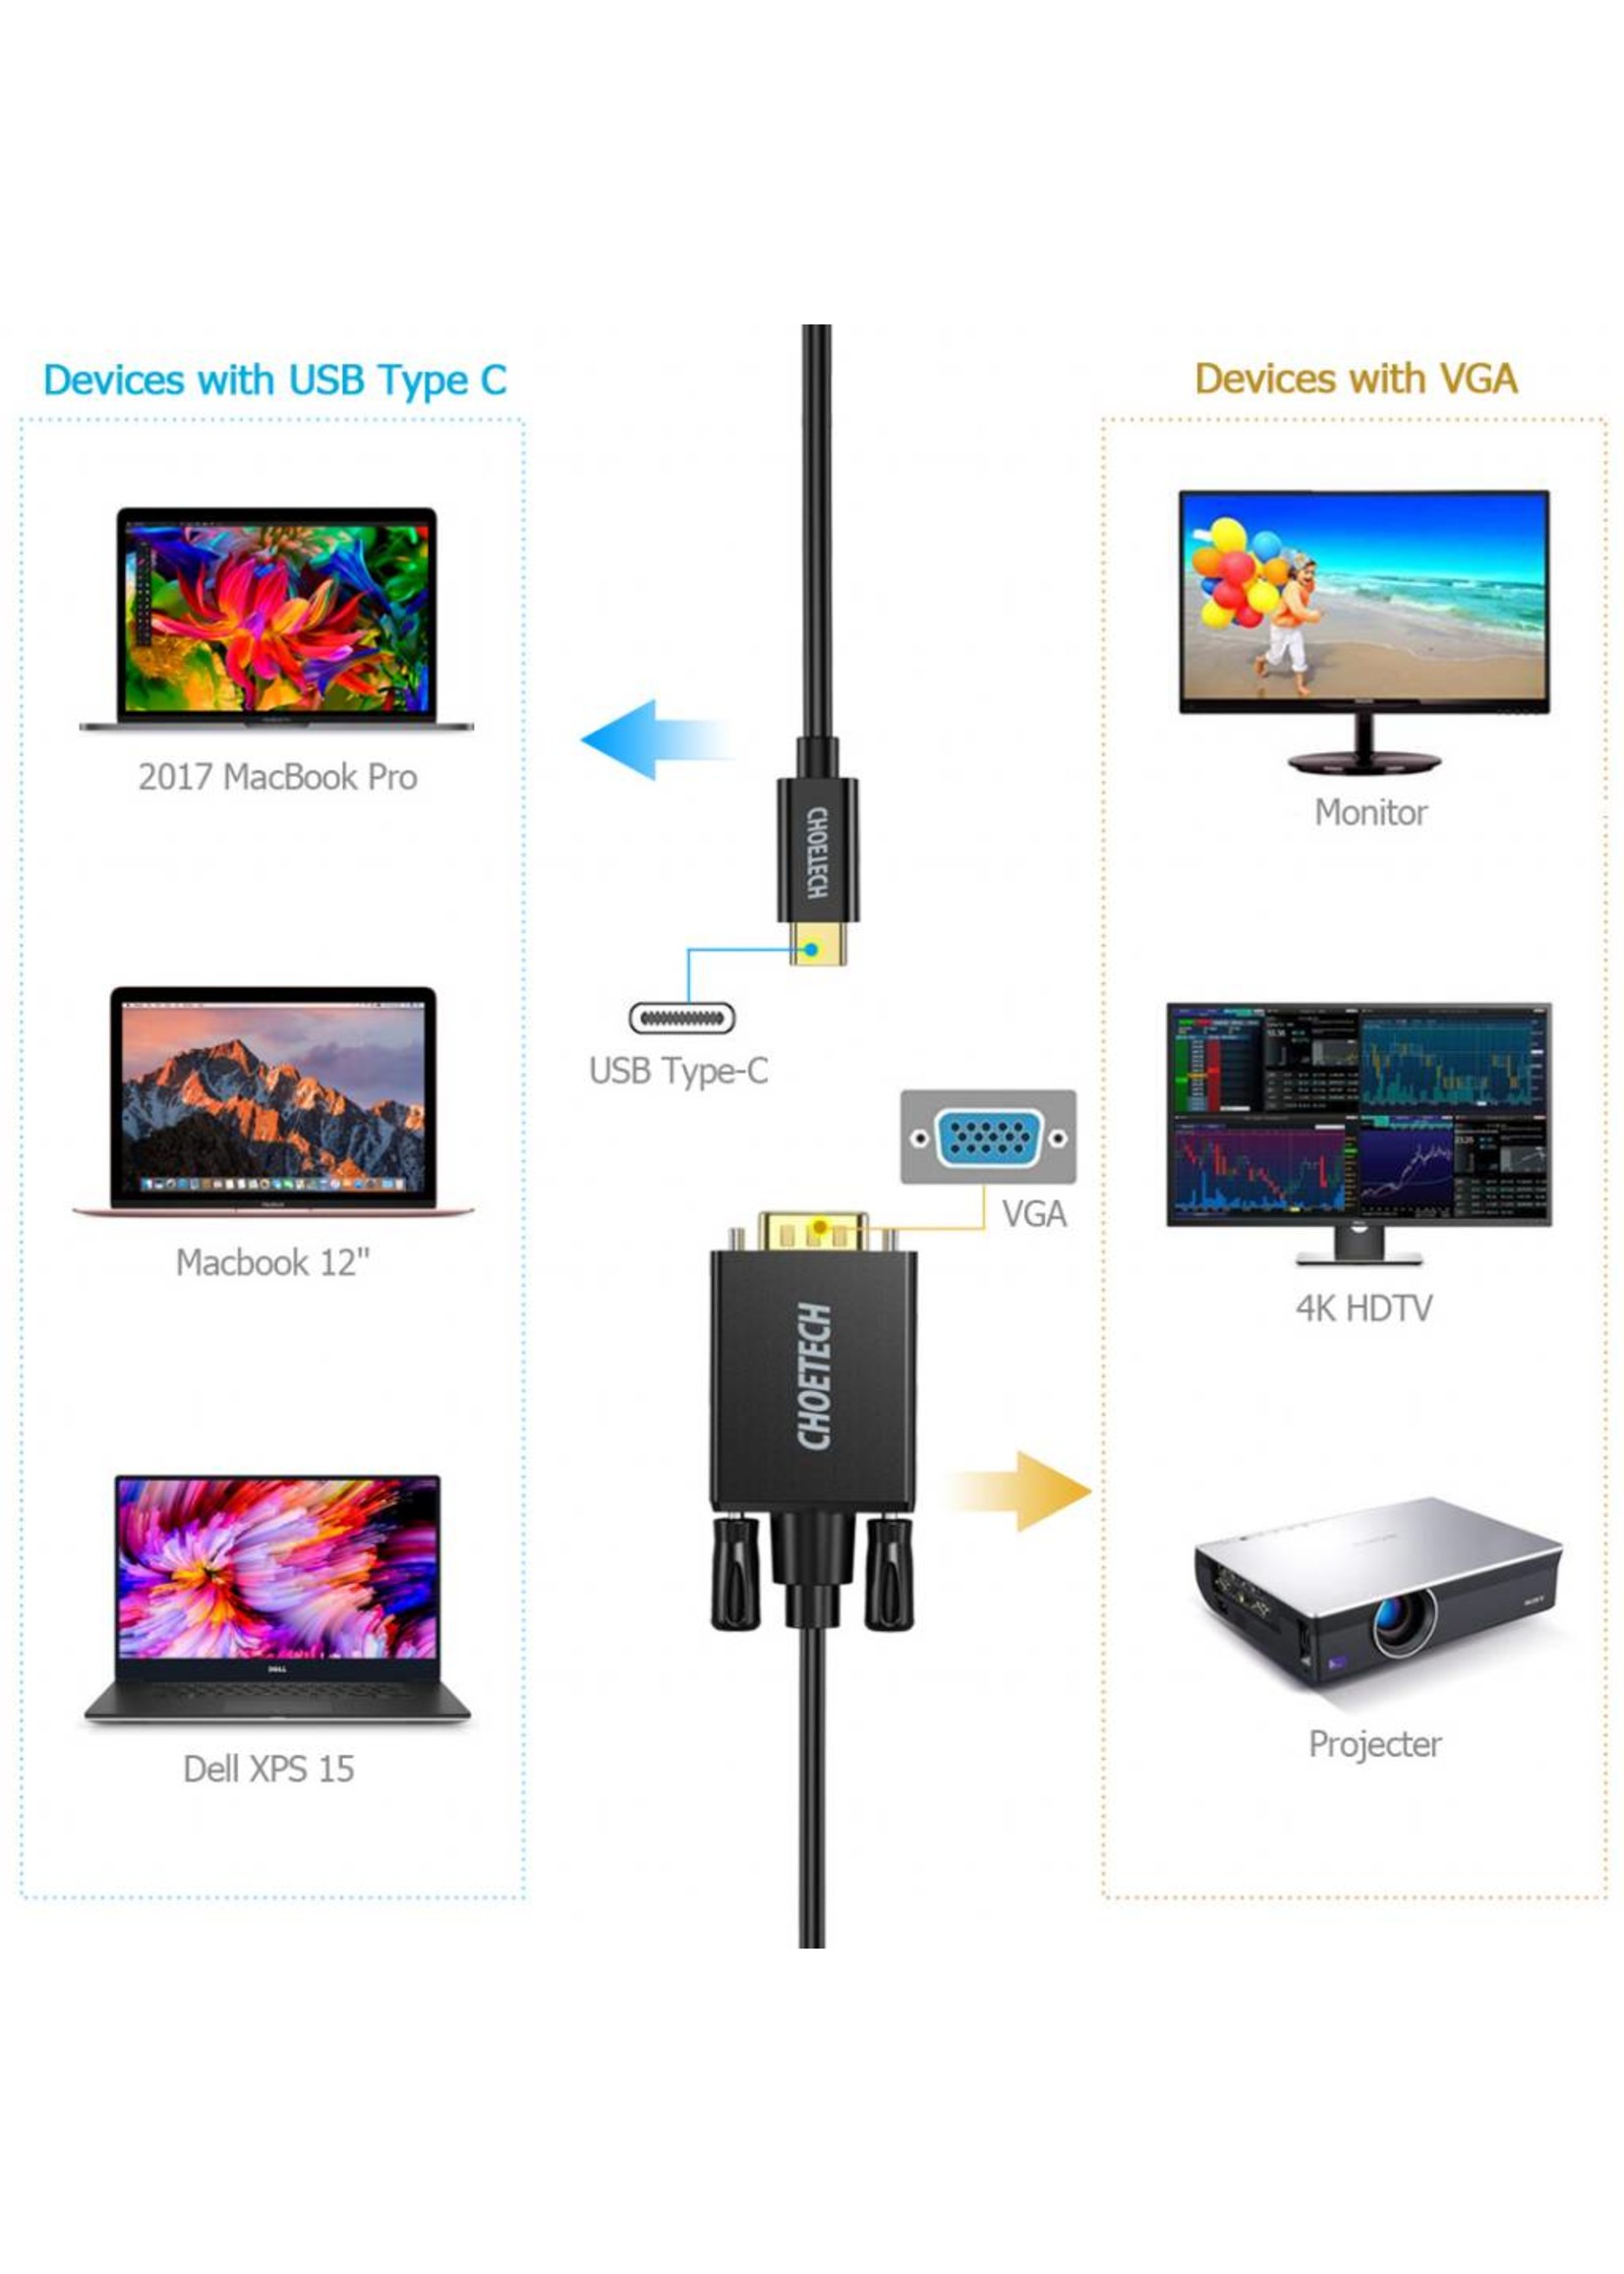 Choetech USB Typ-C zu VGA Kabel -1080P - 1,8 Meter - Schwarz